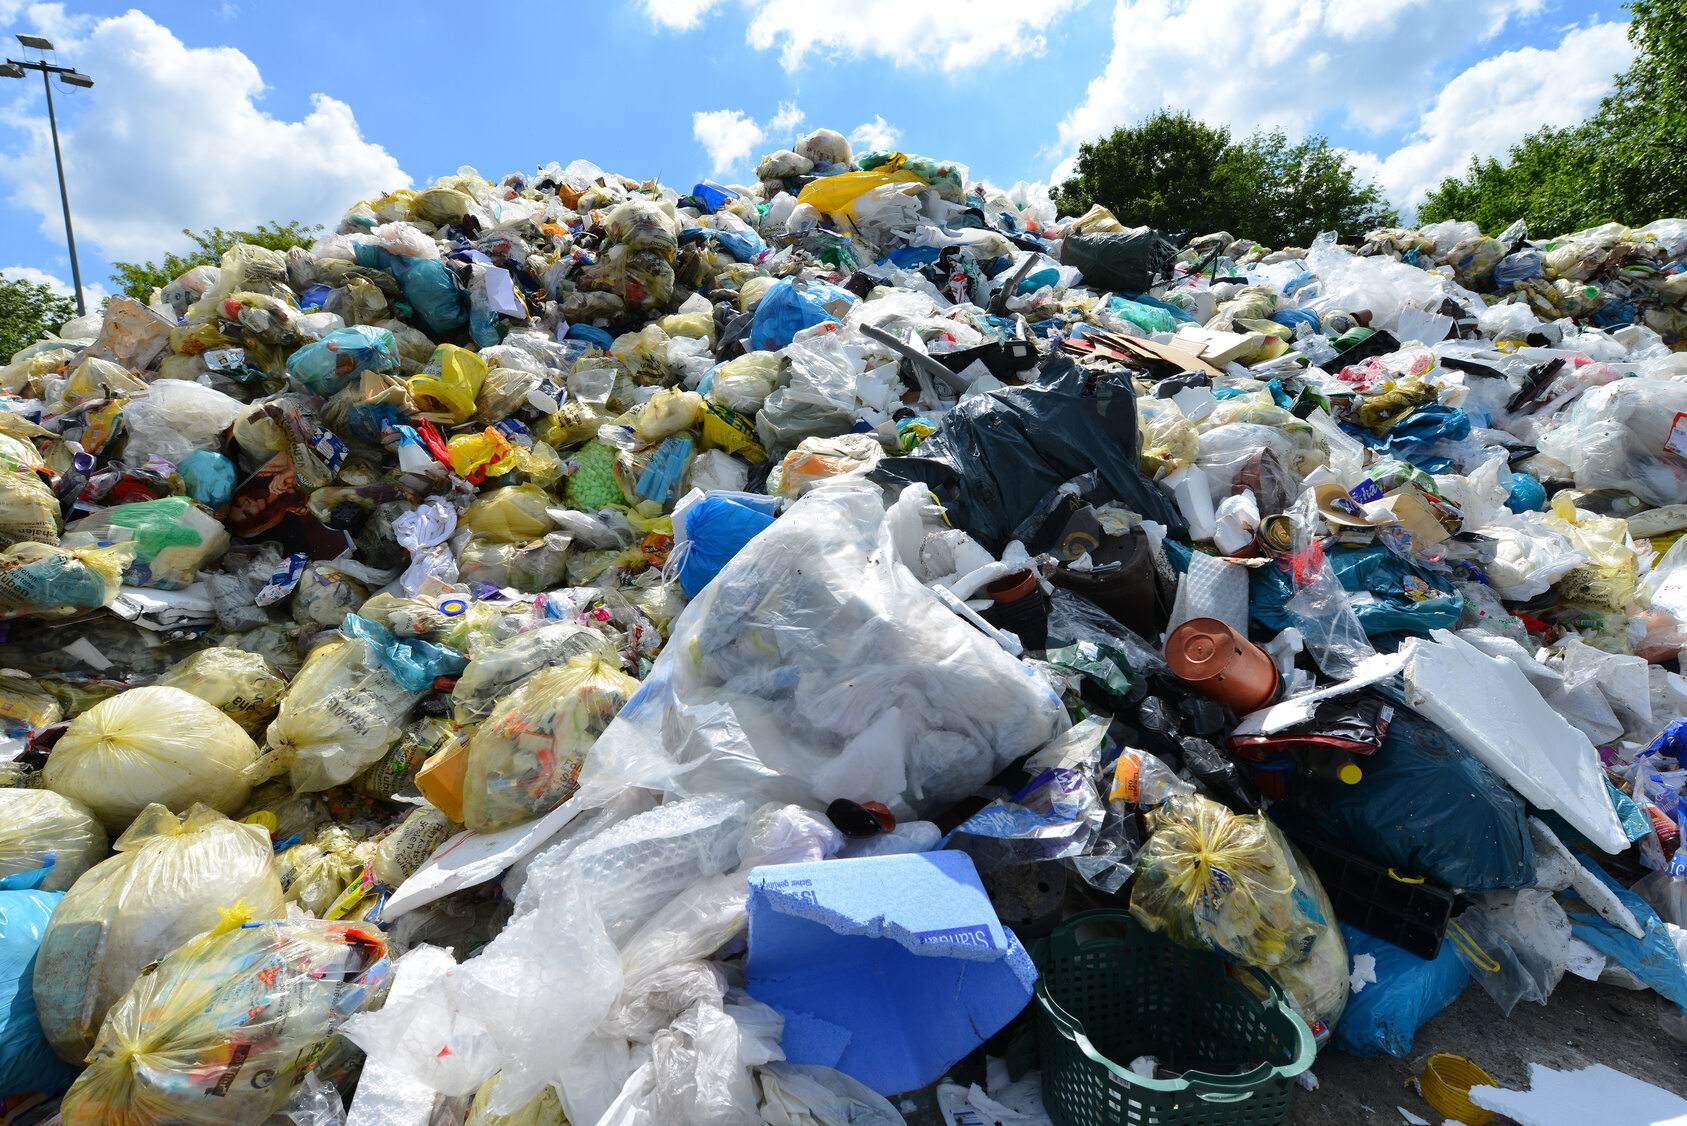 Producenci, którzy wprowadzają na rynek plastikowe opakowania, będą musieli zmierzyć się z nową opłatą. Najwcześniej od 2022 roku, rząd chce wprowadzić dodatkową opłatę recyklingową. Wyniesie ona...